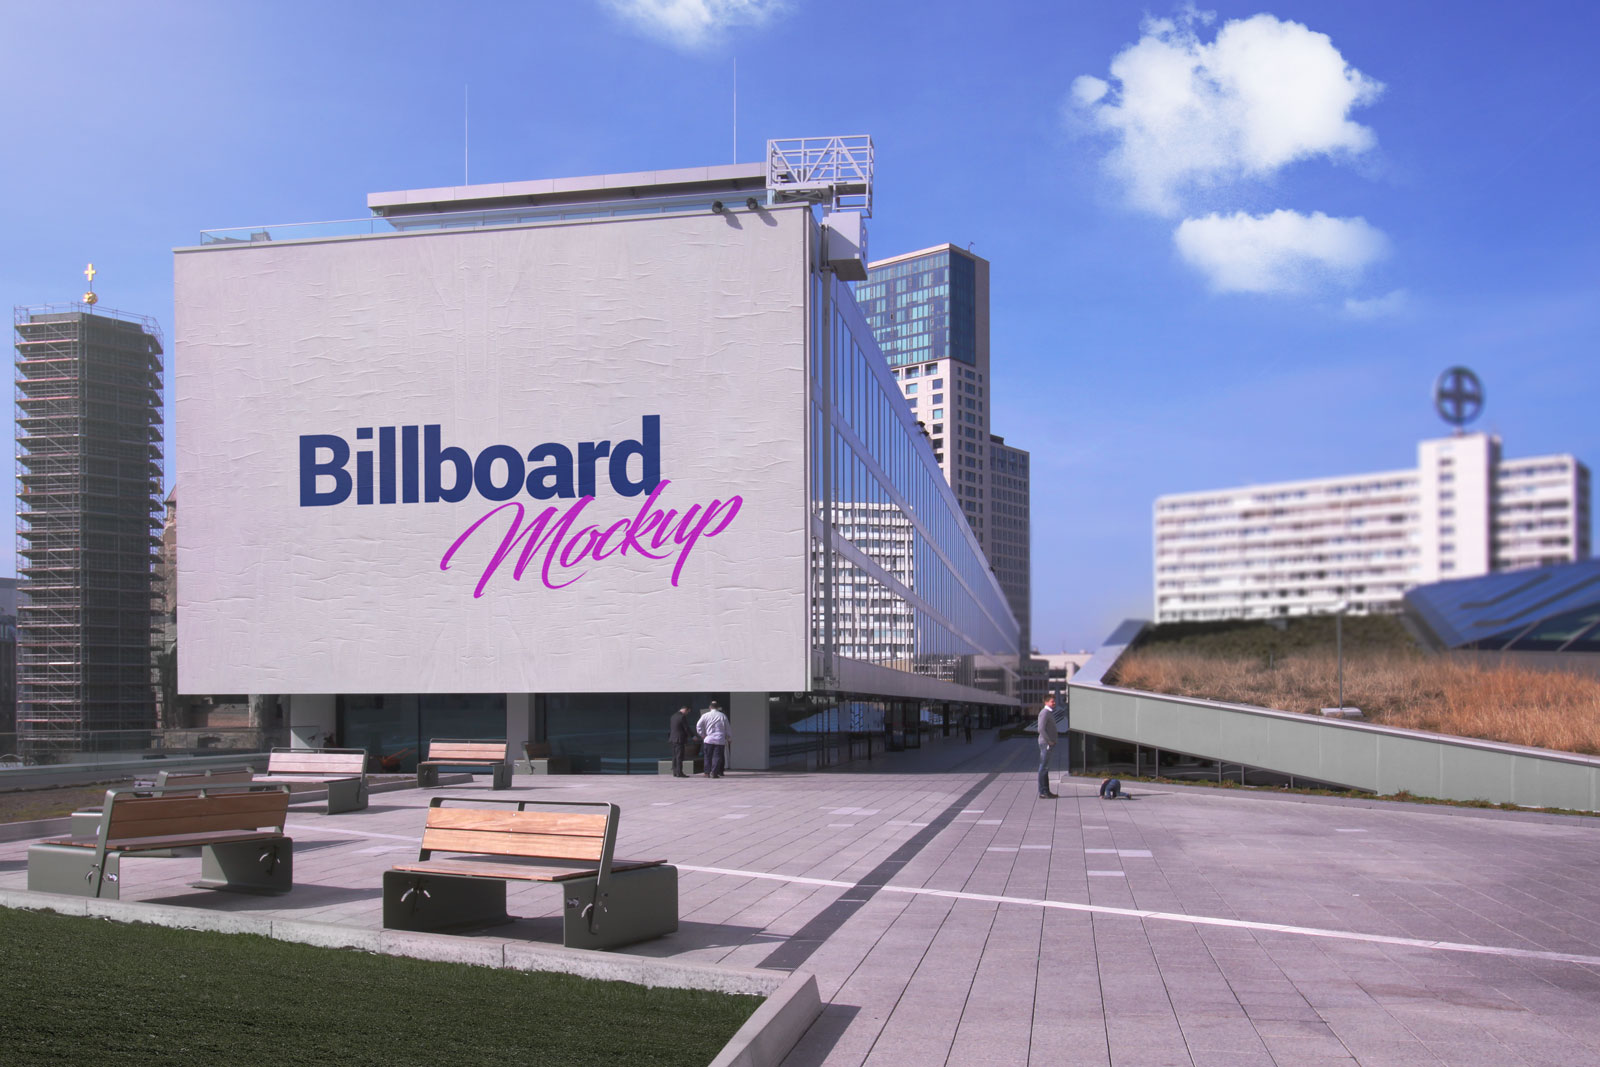 Werbegebäude im Freien im Freien Billboard Mockup